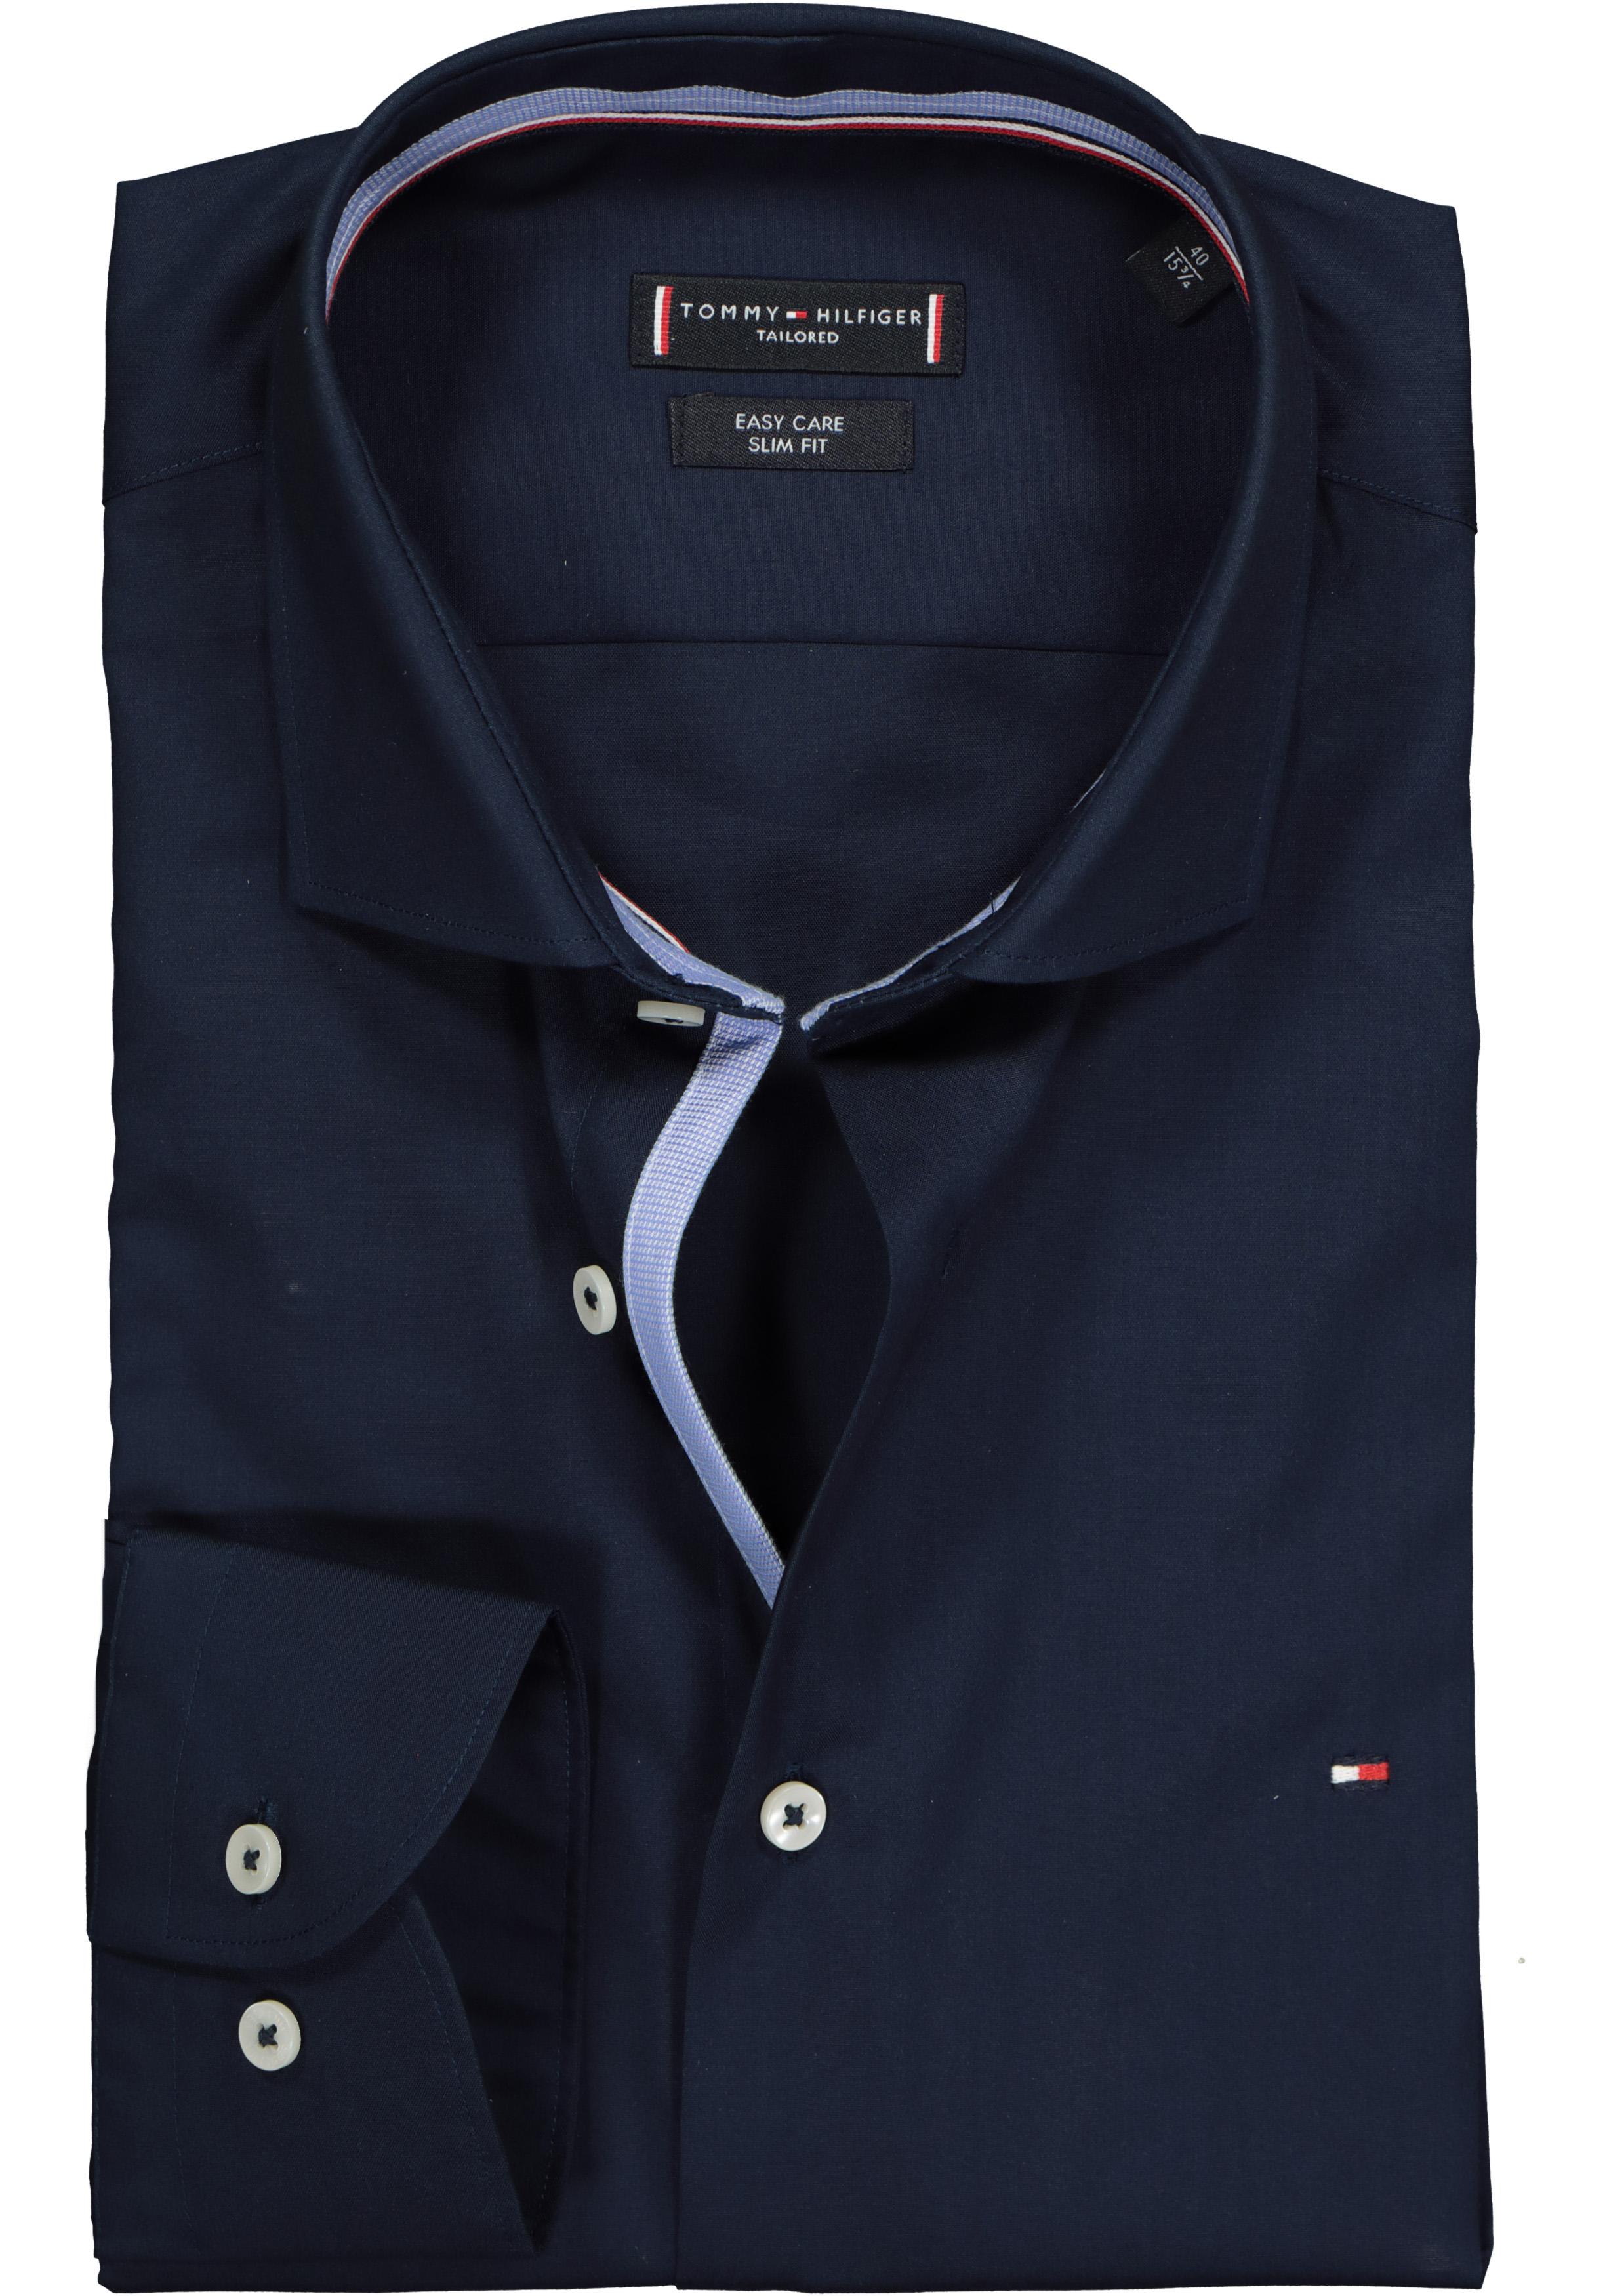 Geletterdheid functie hulp Tommy Hilfiger Classic slim fit overhemd, donkerblauw (contrast) - SALE tot  70% korting